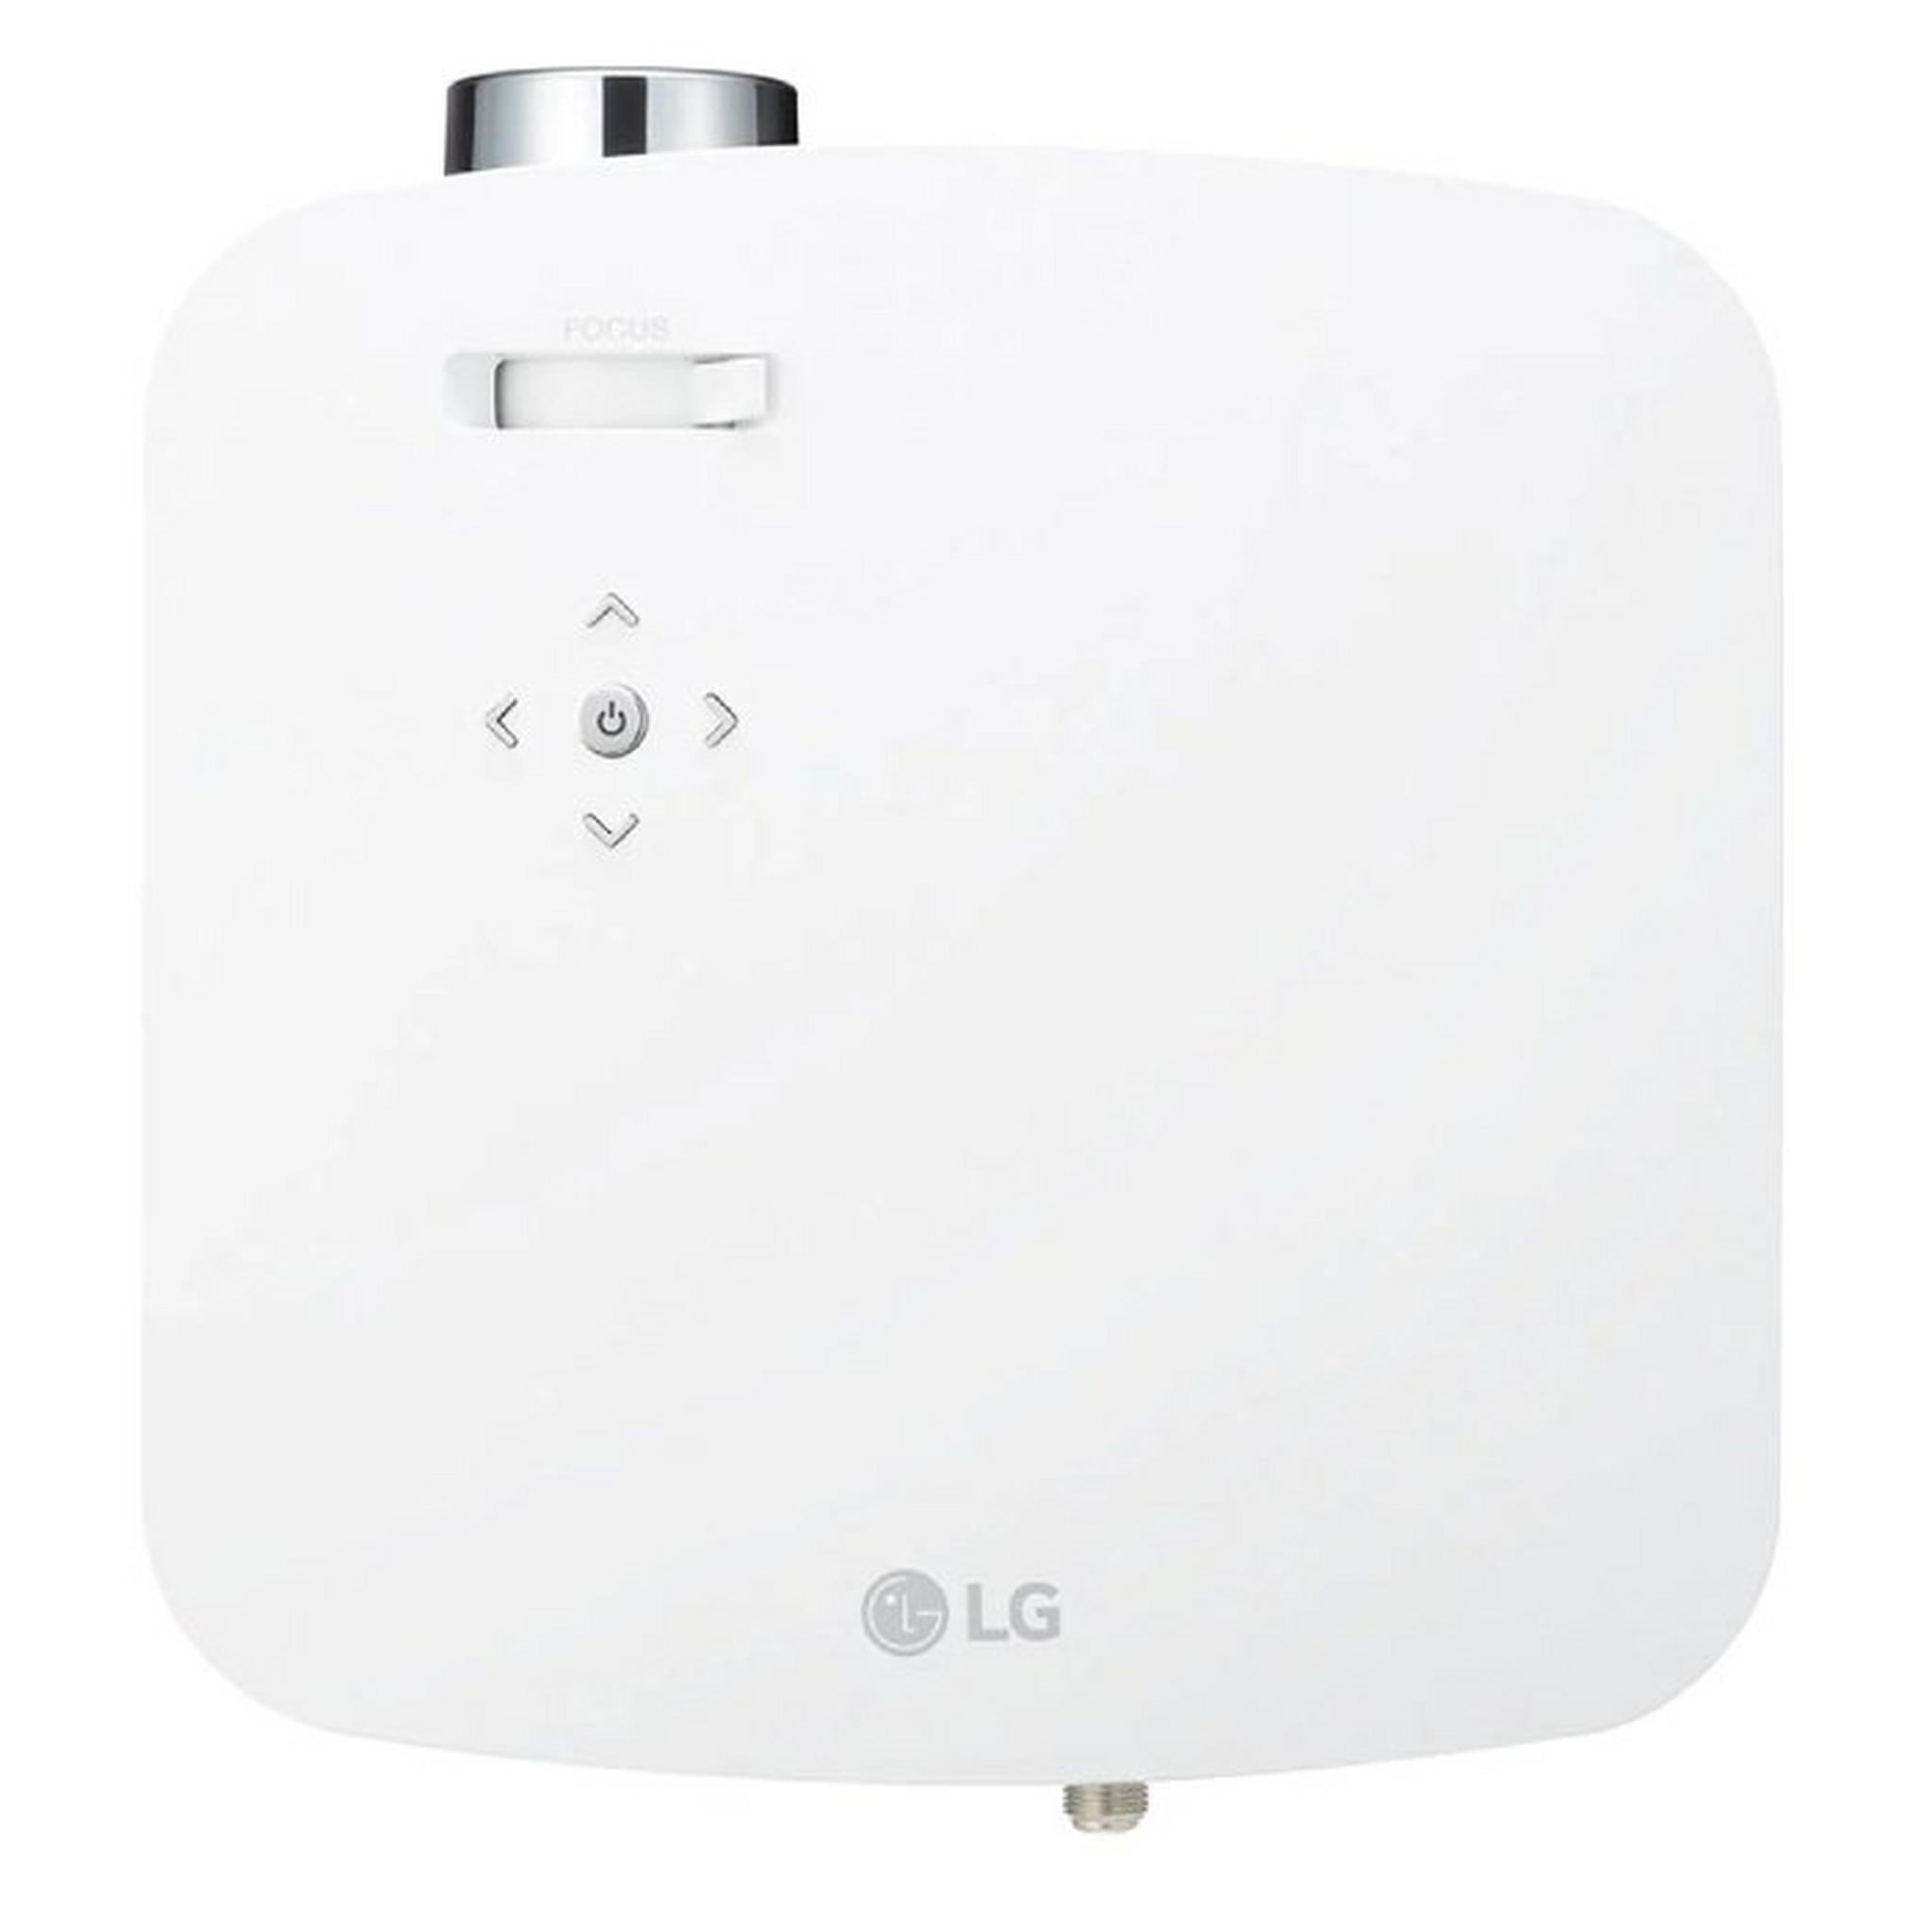 LG 600lm Full HD LED Projector (PF50KG)